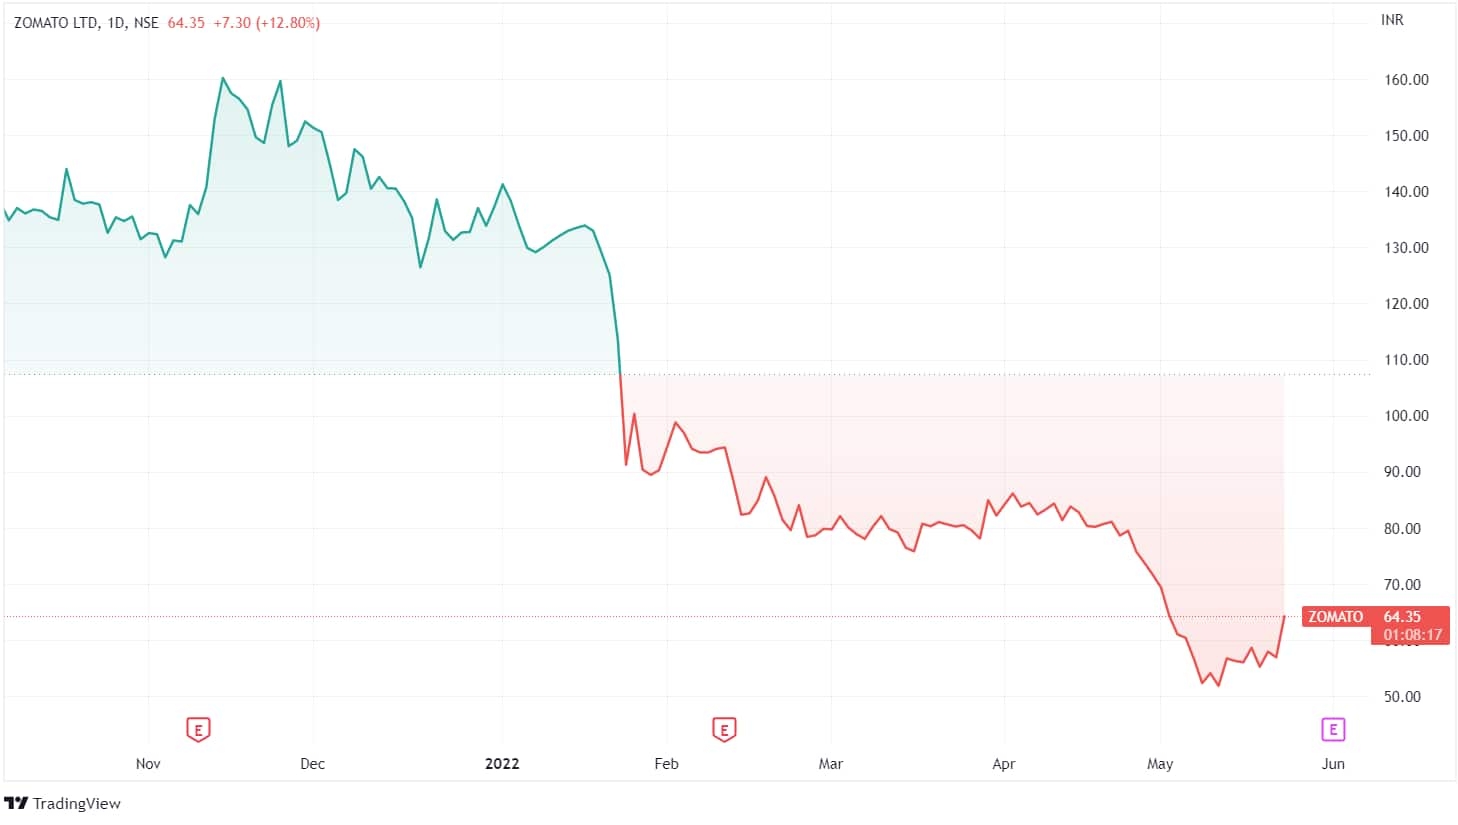 Stock Price movement of Zomato